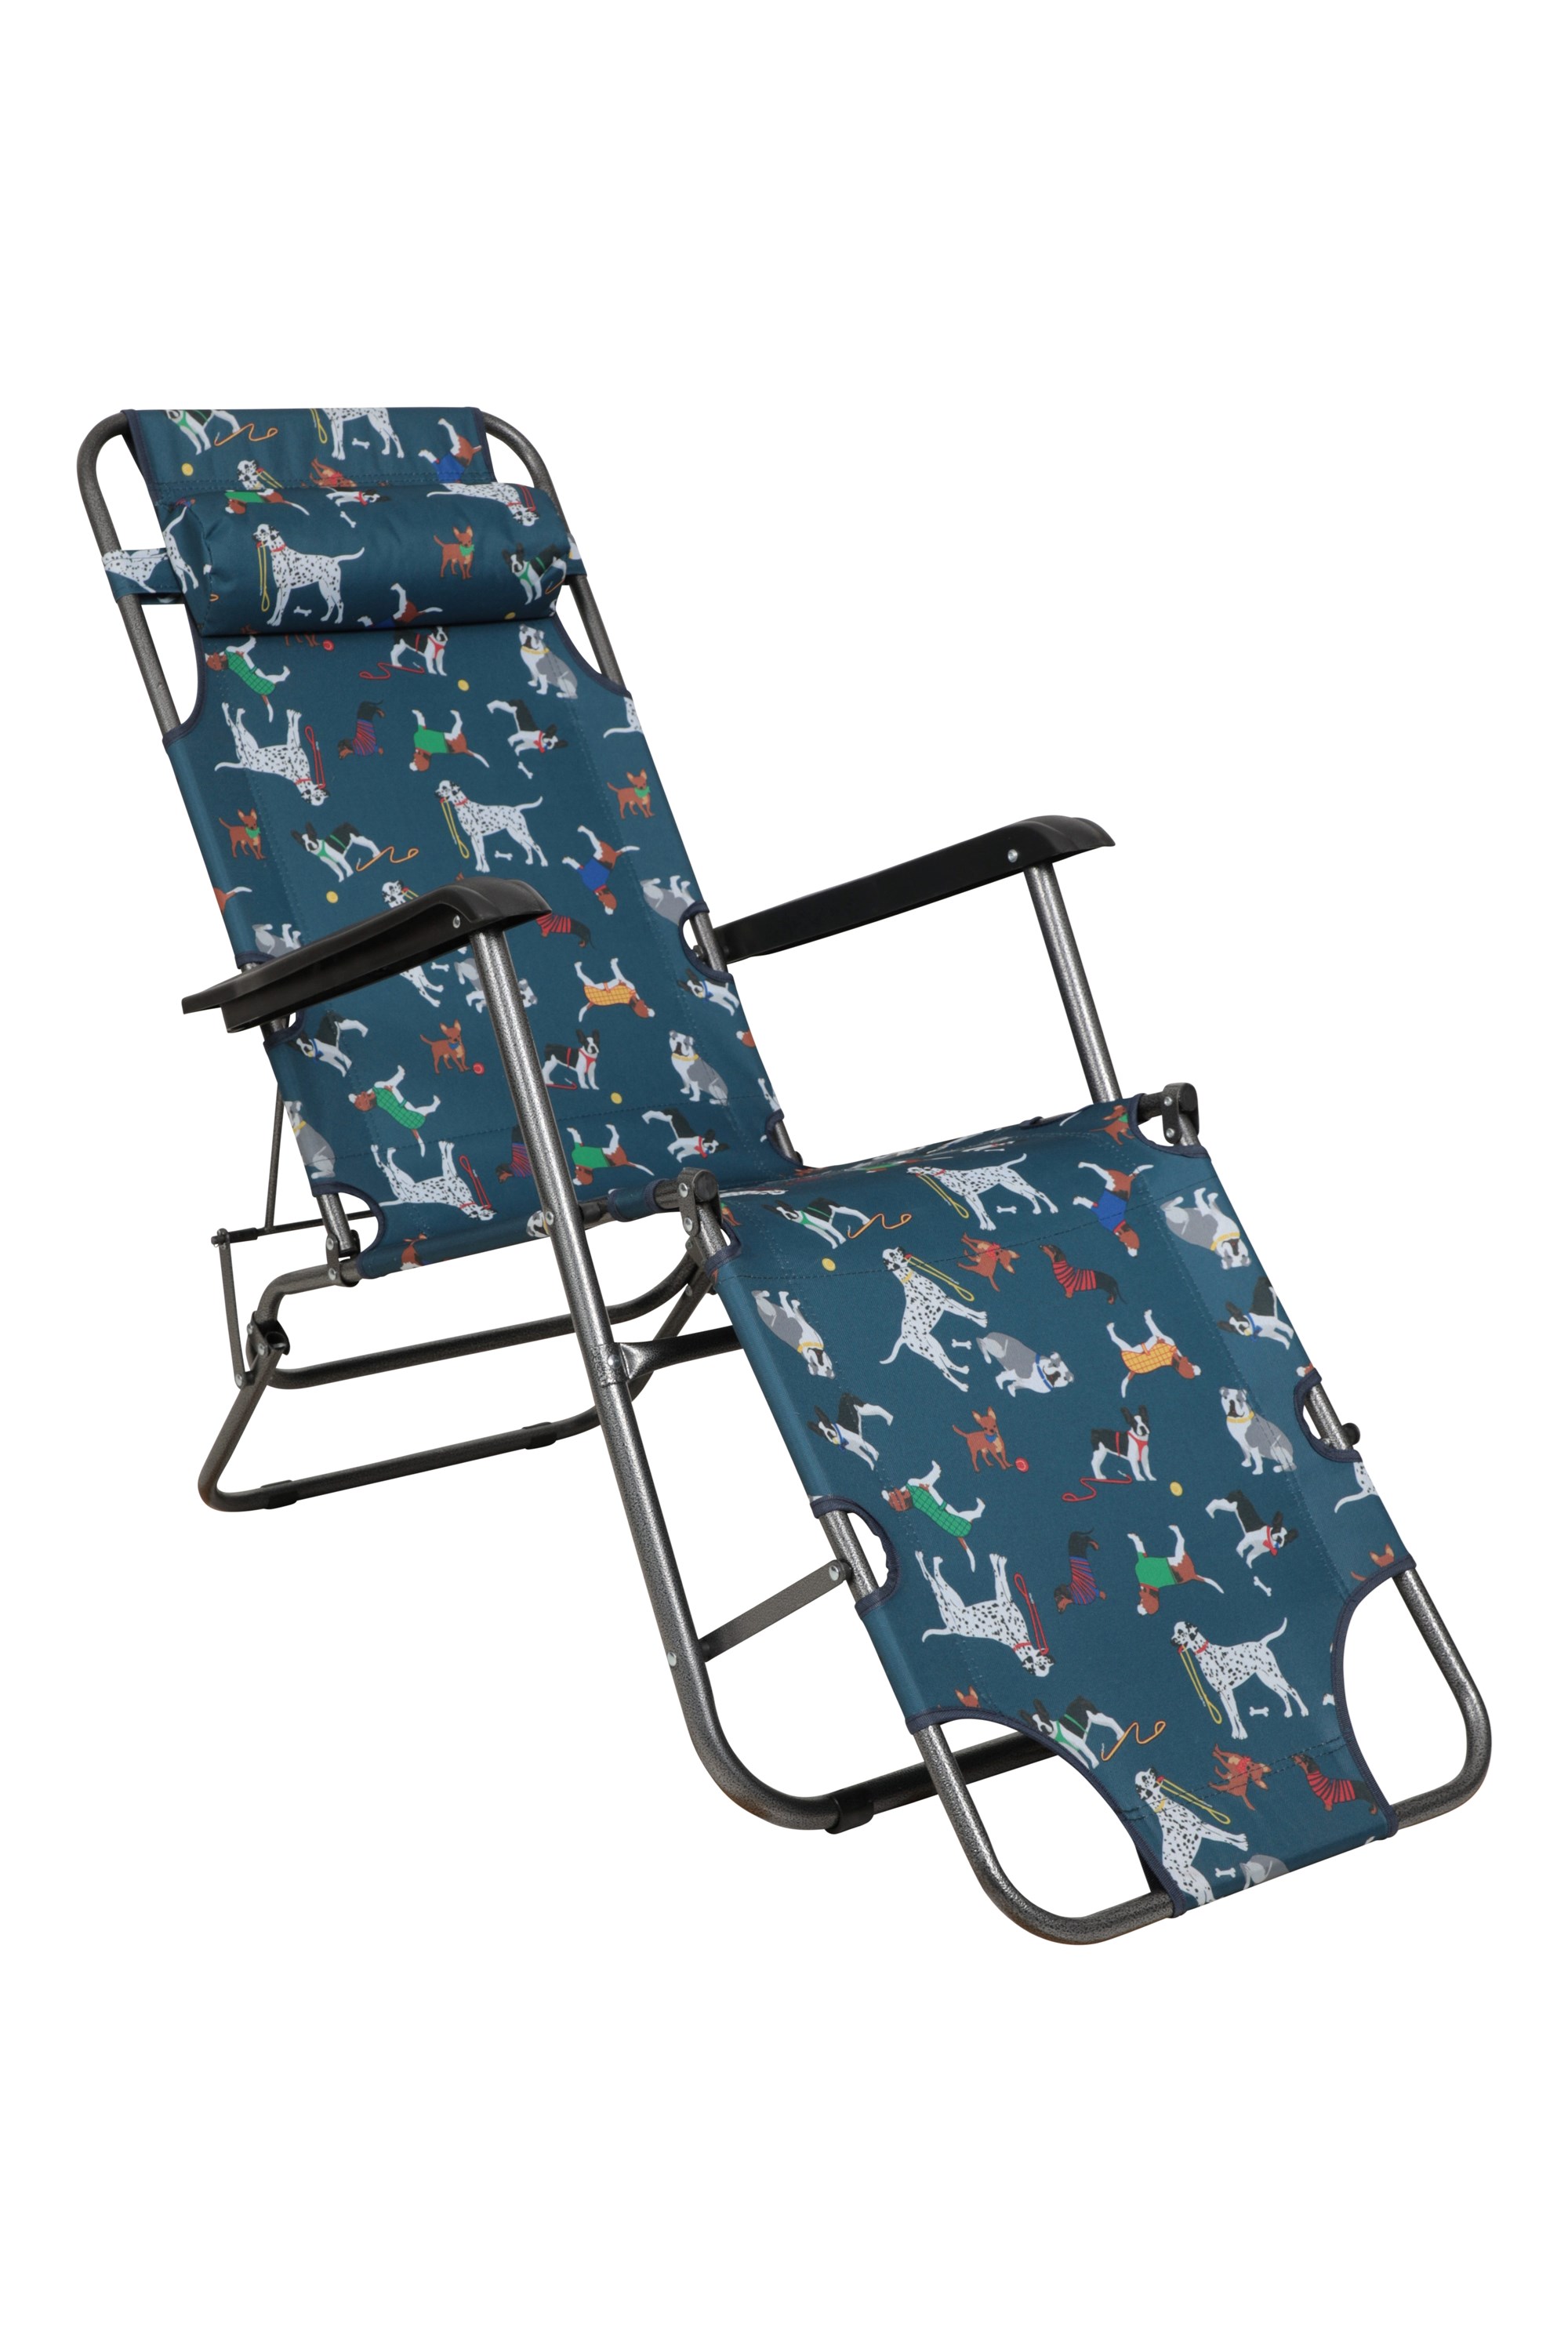 Sunlounger - składane krzesło ogrodowe - Navy